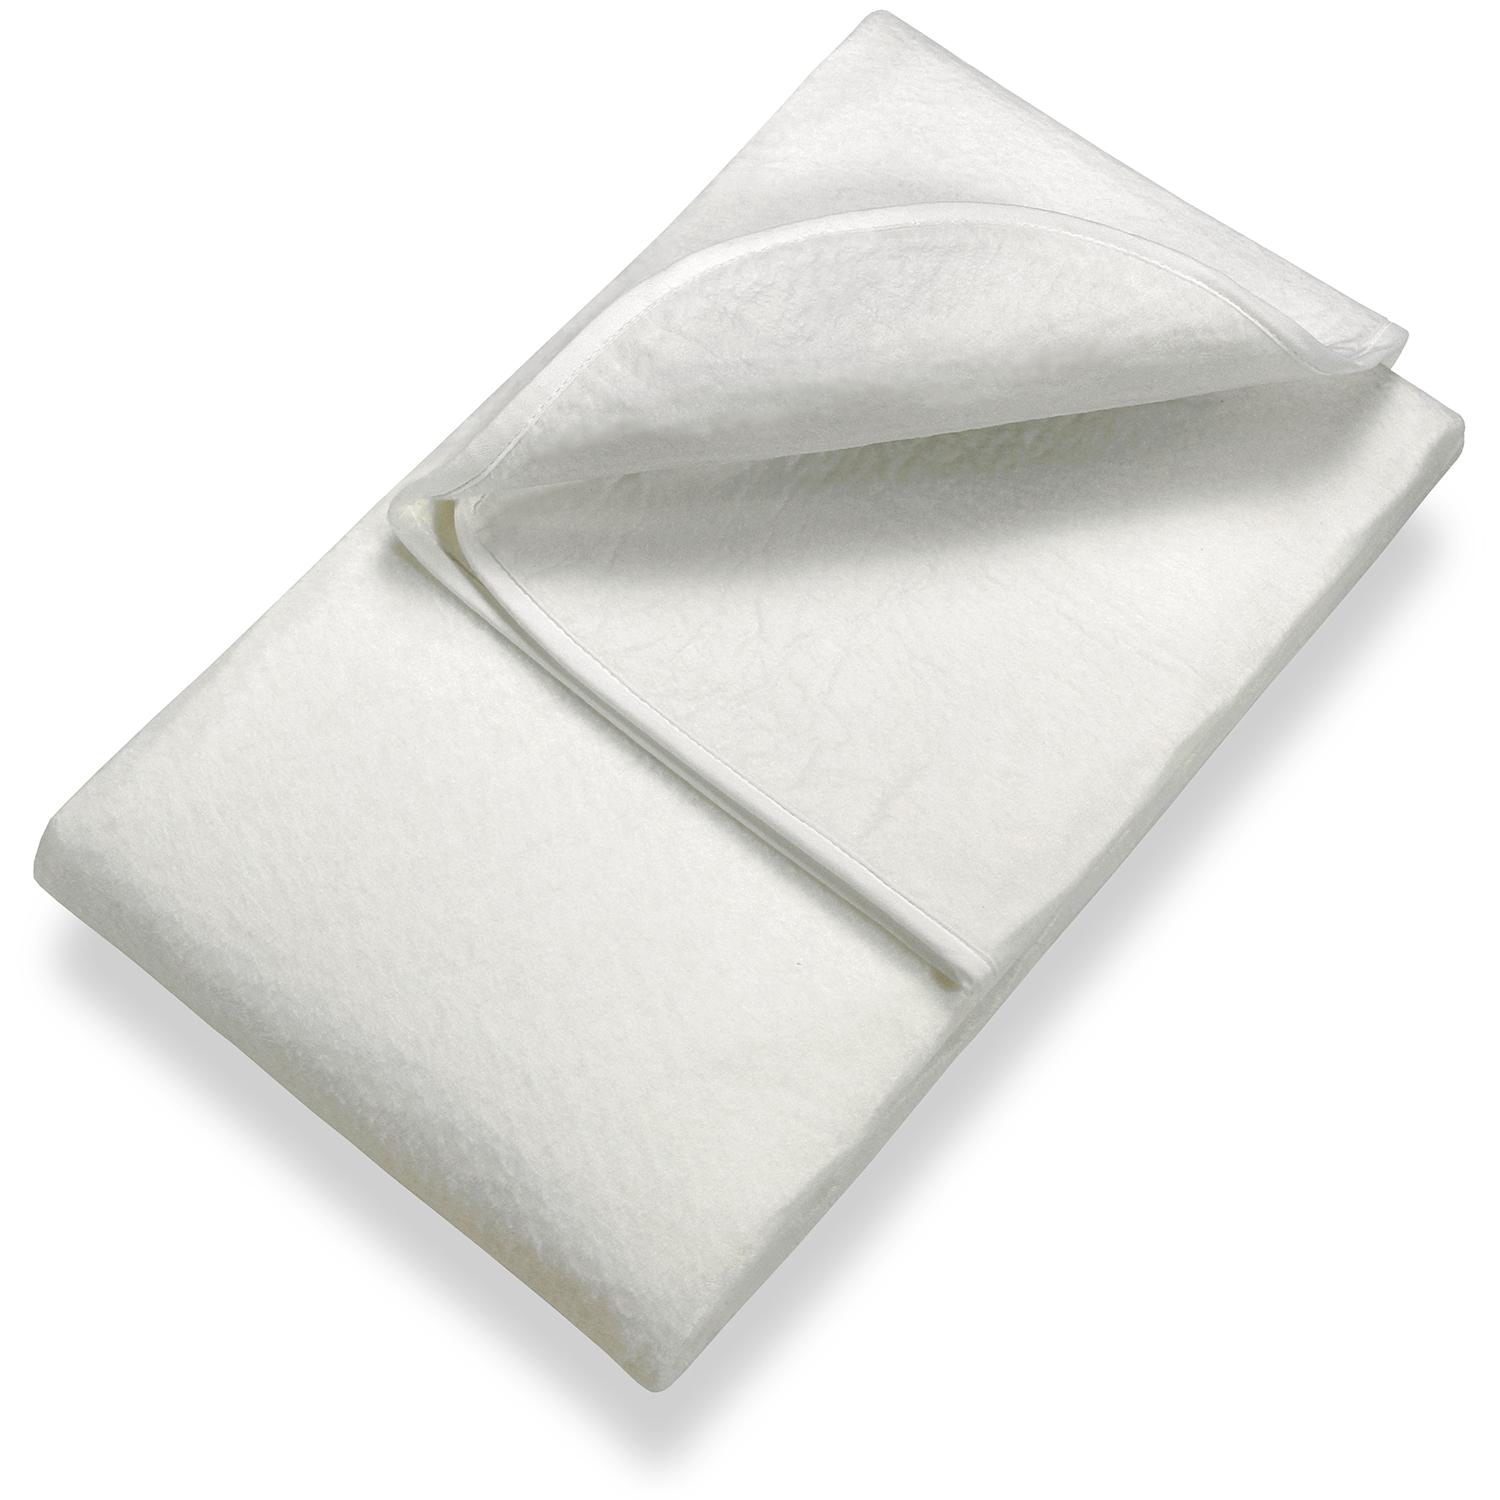 Sleezzz Basic, protège-matelas en feutre aiguilleté 160 x 200 cm, à poser sur le sommier, blanc